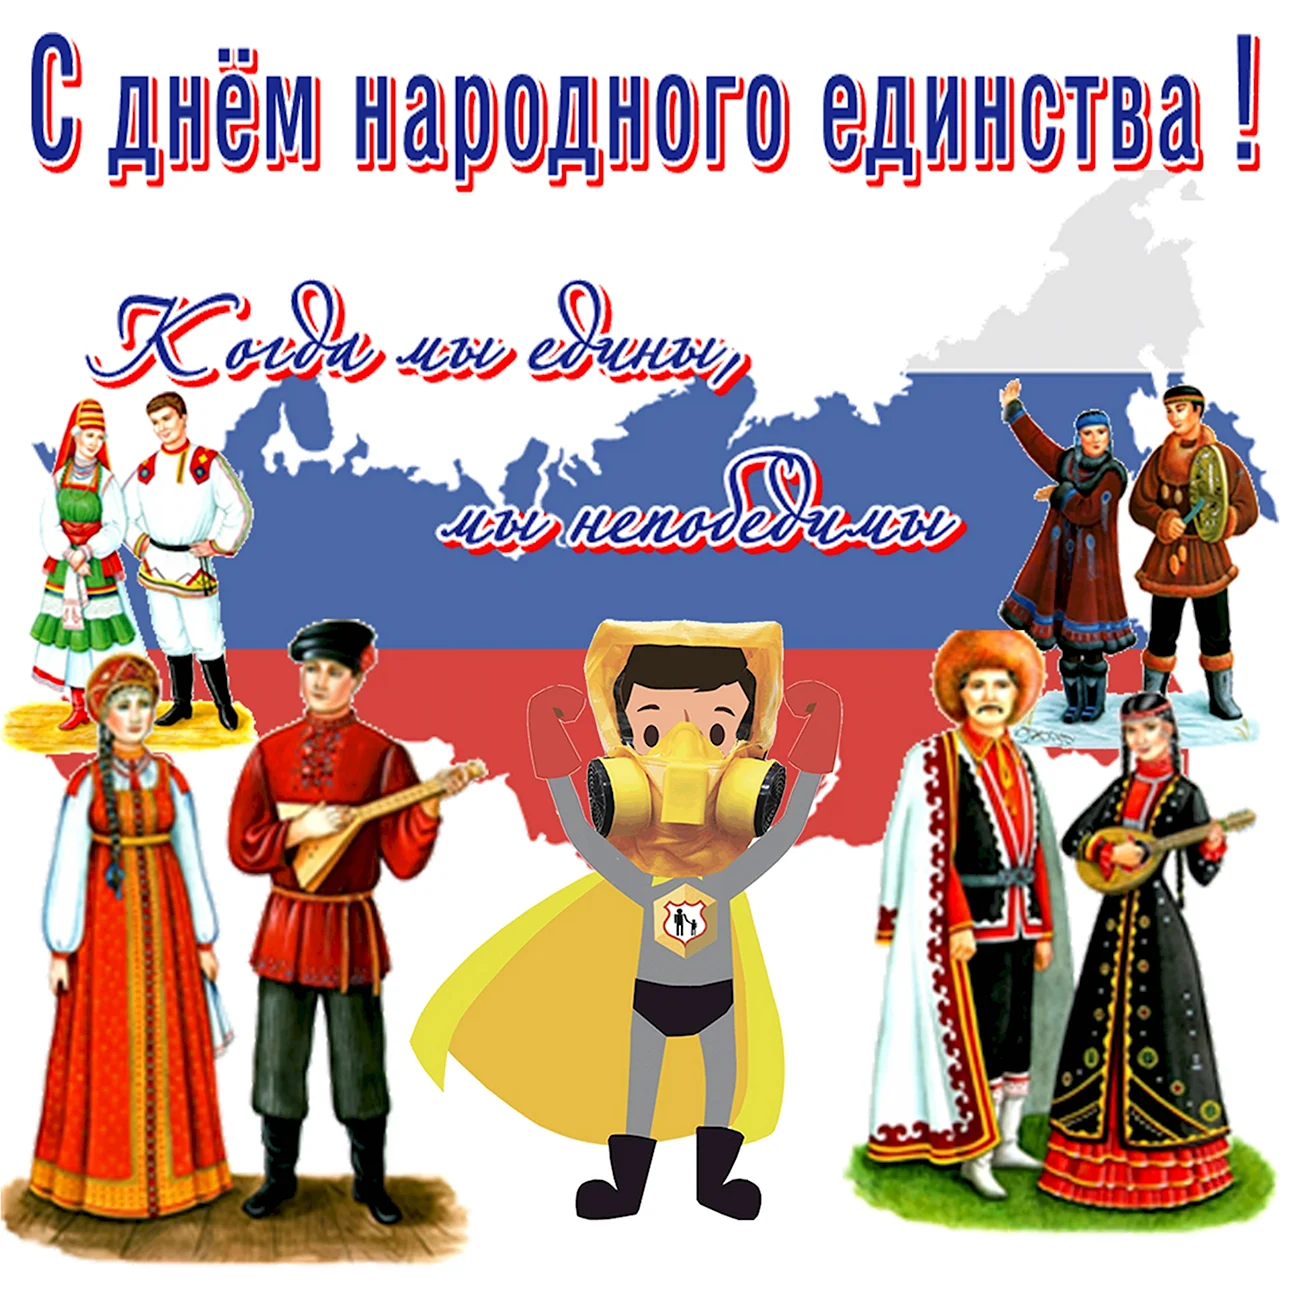 Культура и быт народов России день народного единства. Поздравление